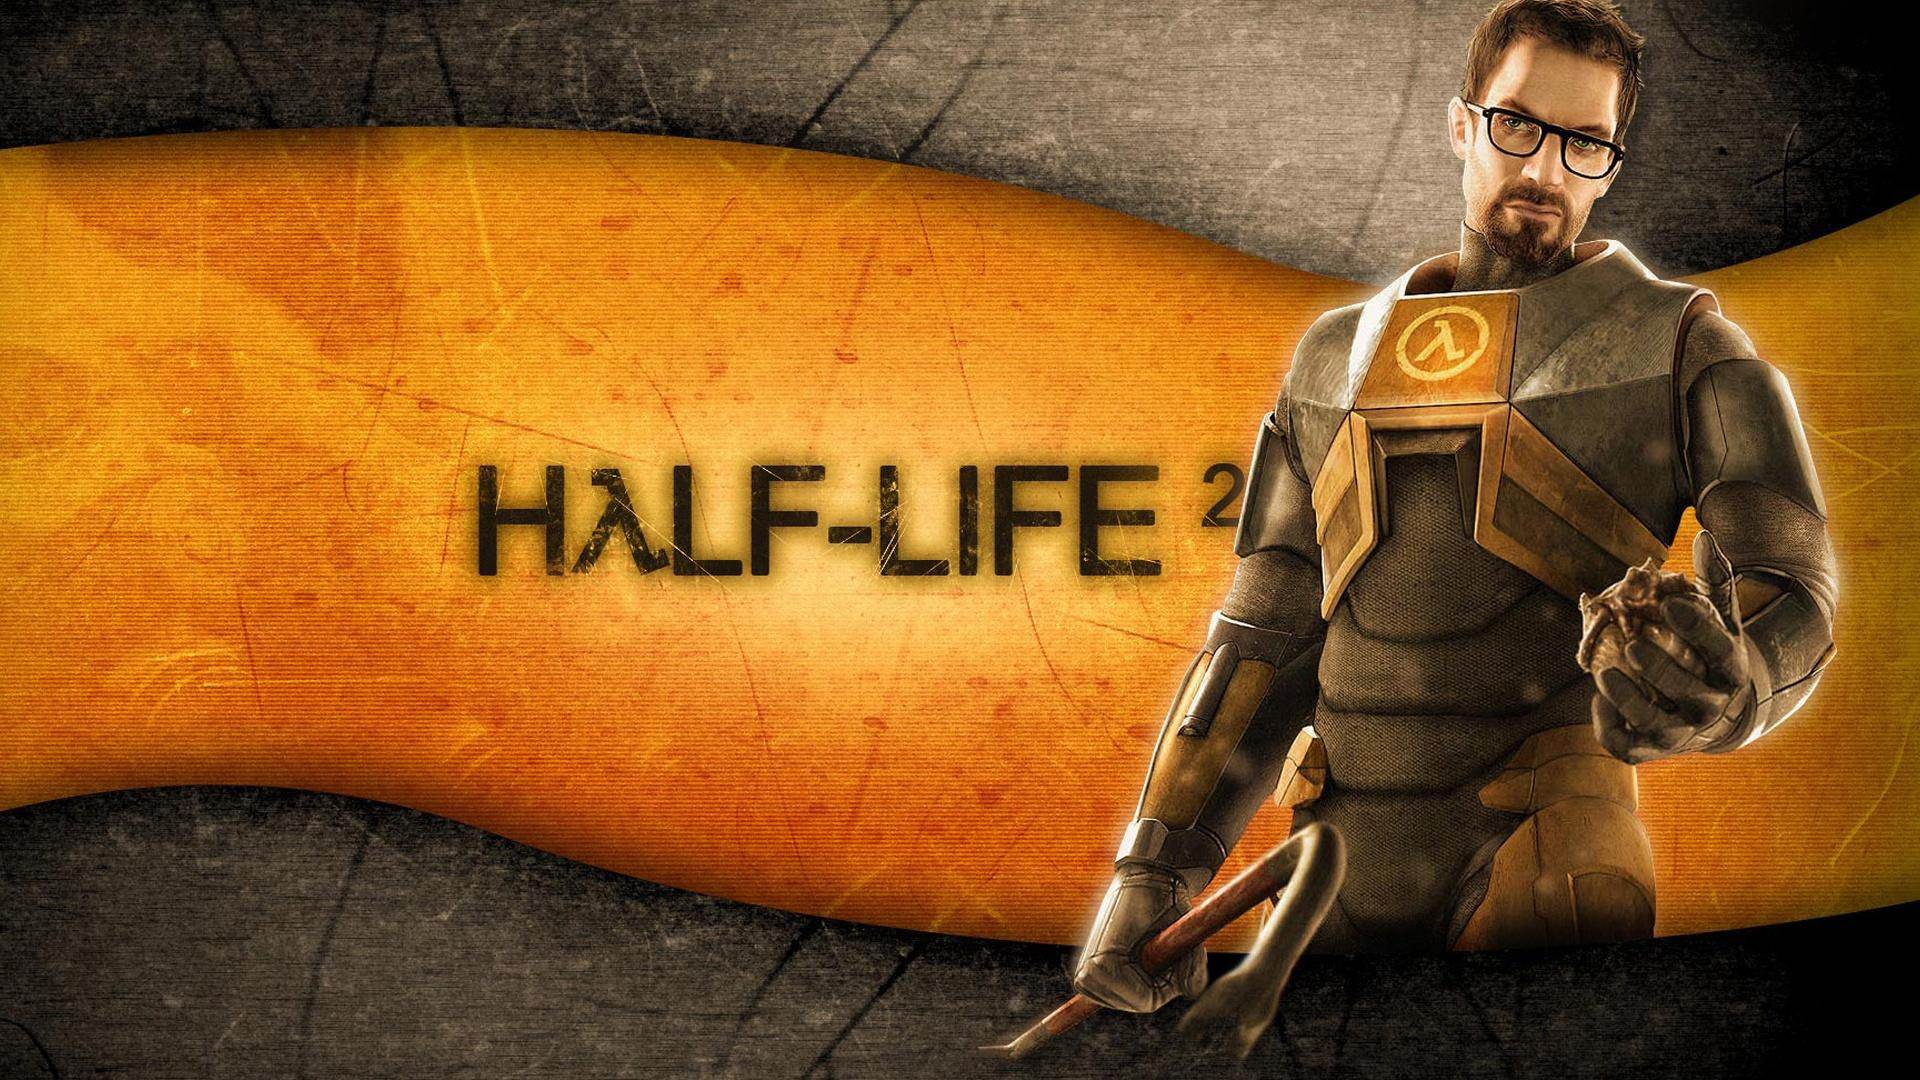 17年前由《半条命2》引起的世界第一起游戏泄露事件